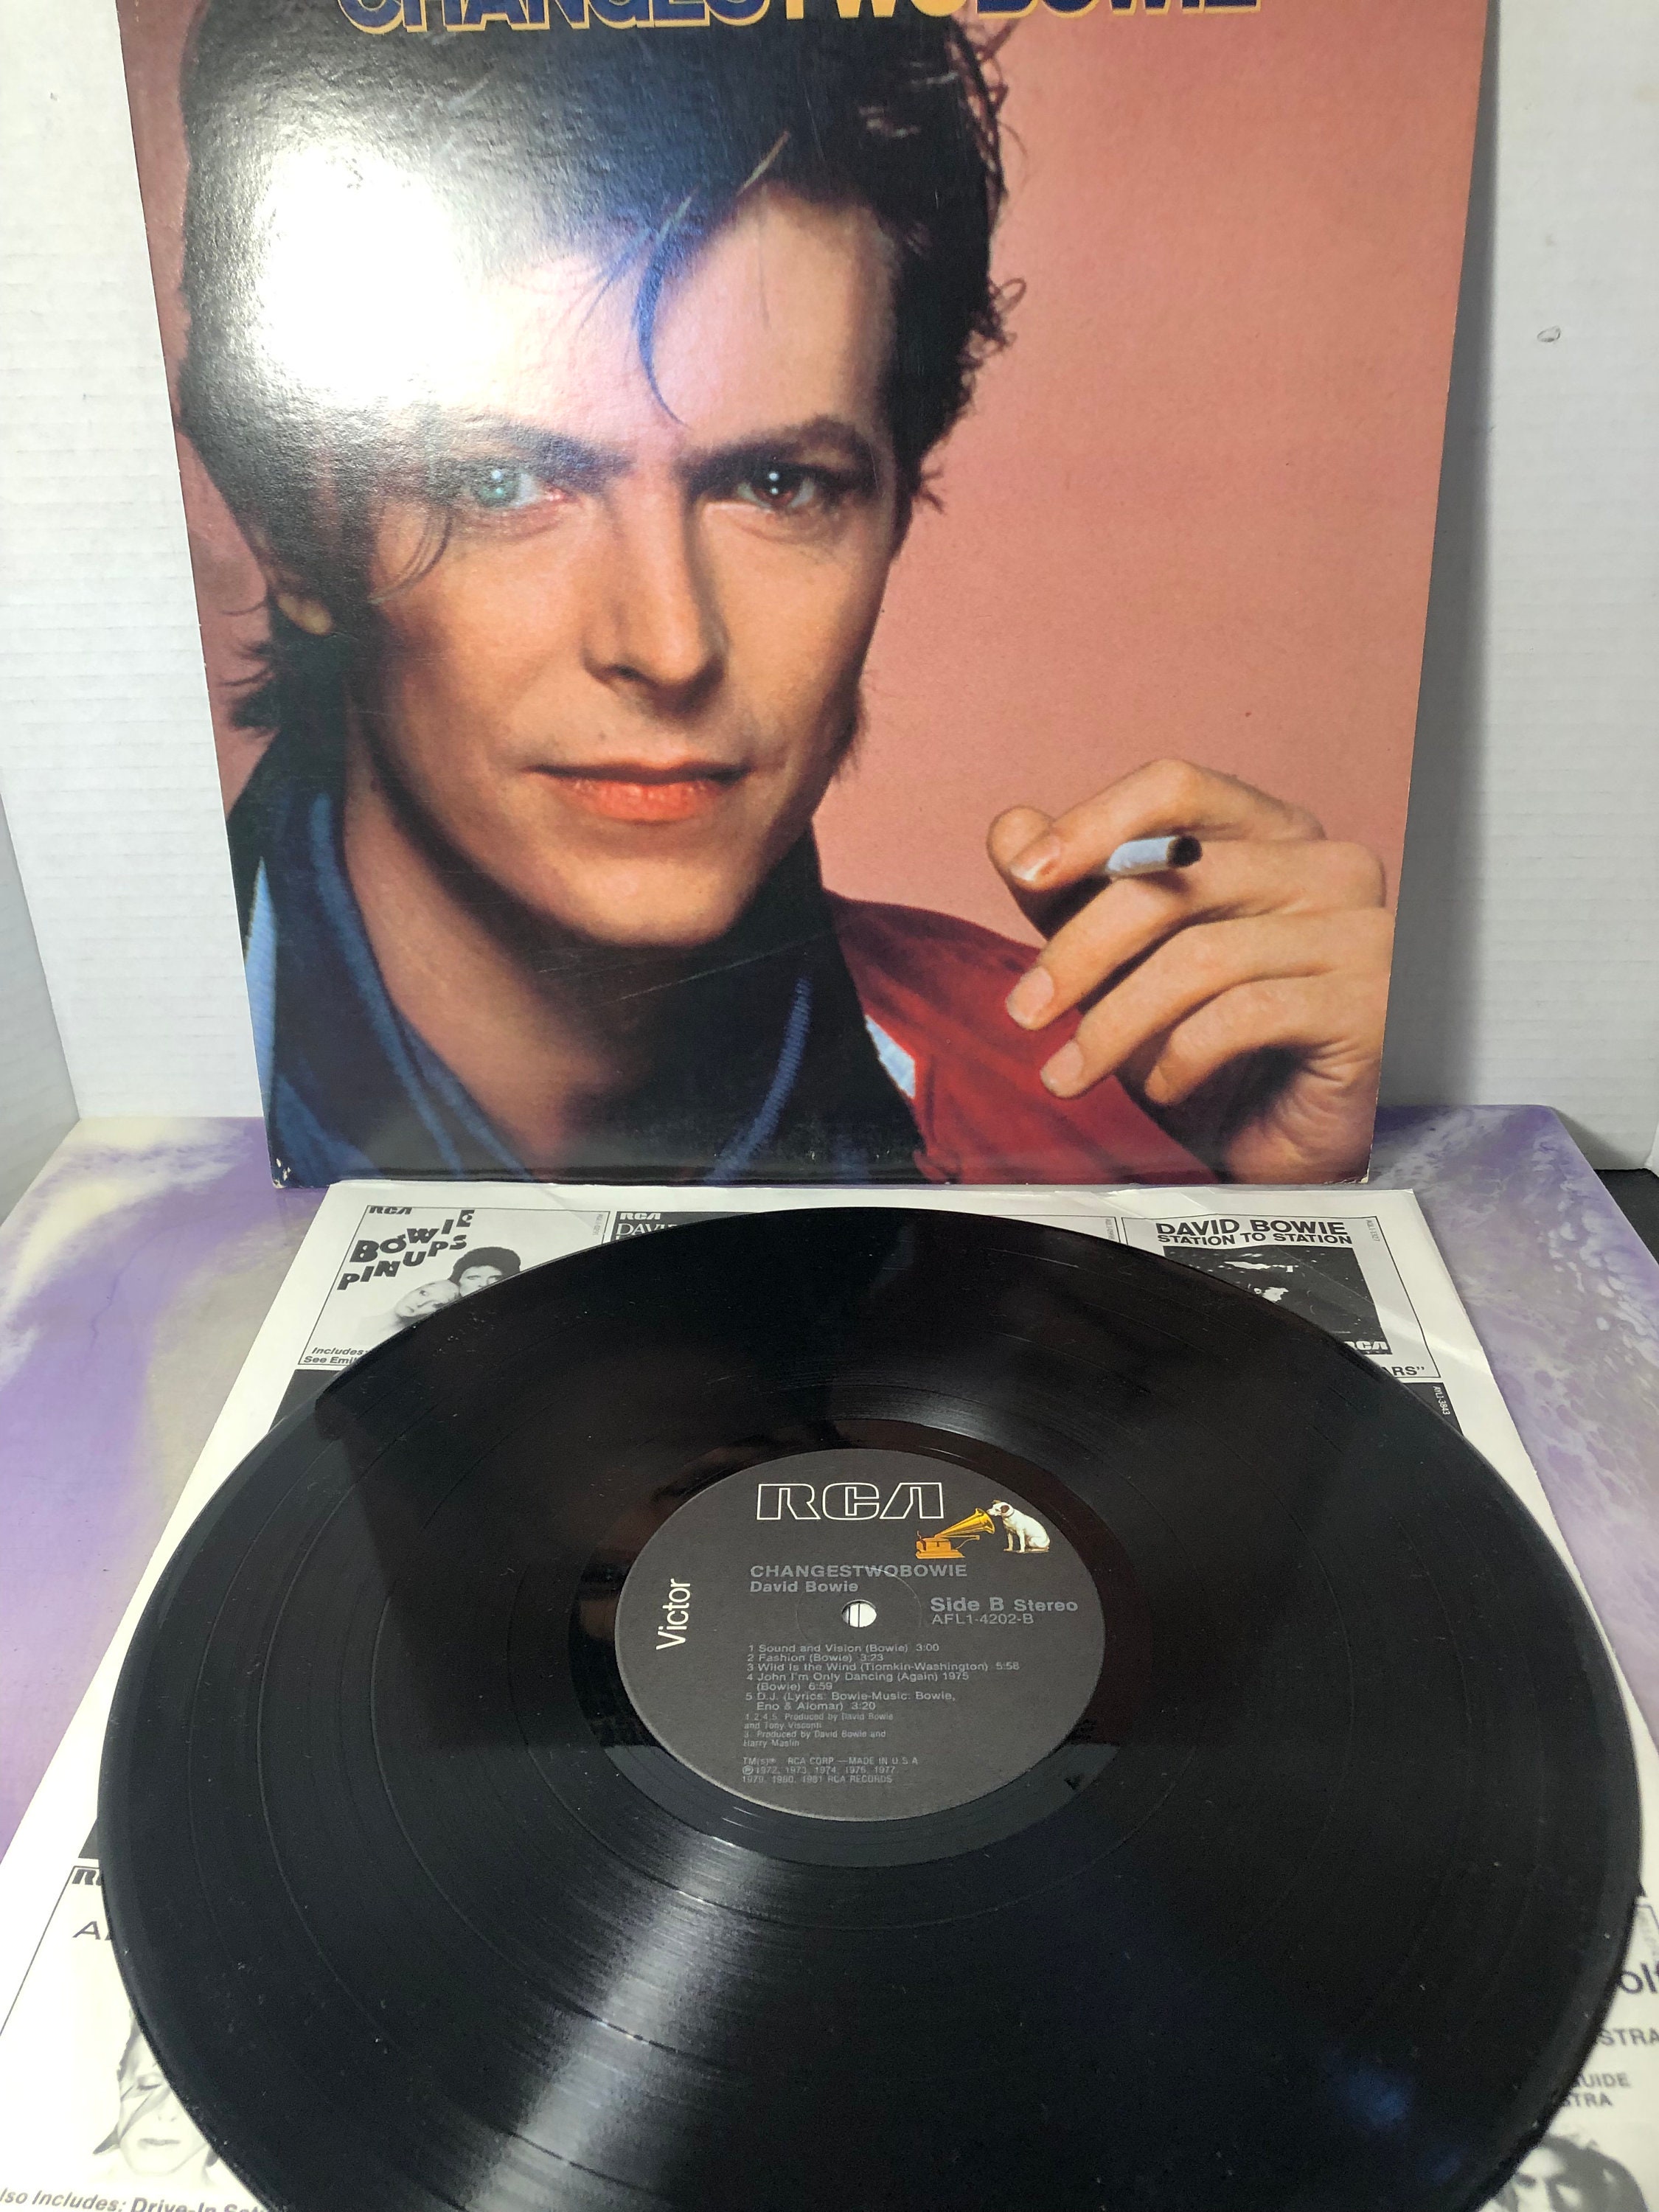 Vintage David Bowie / Vinyl Record Changestwobowie Vintage pic